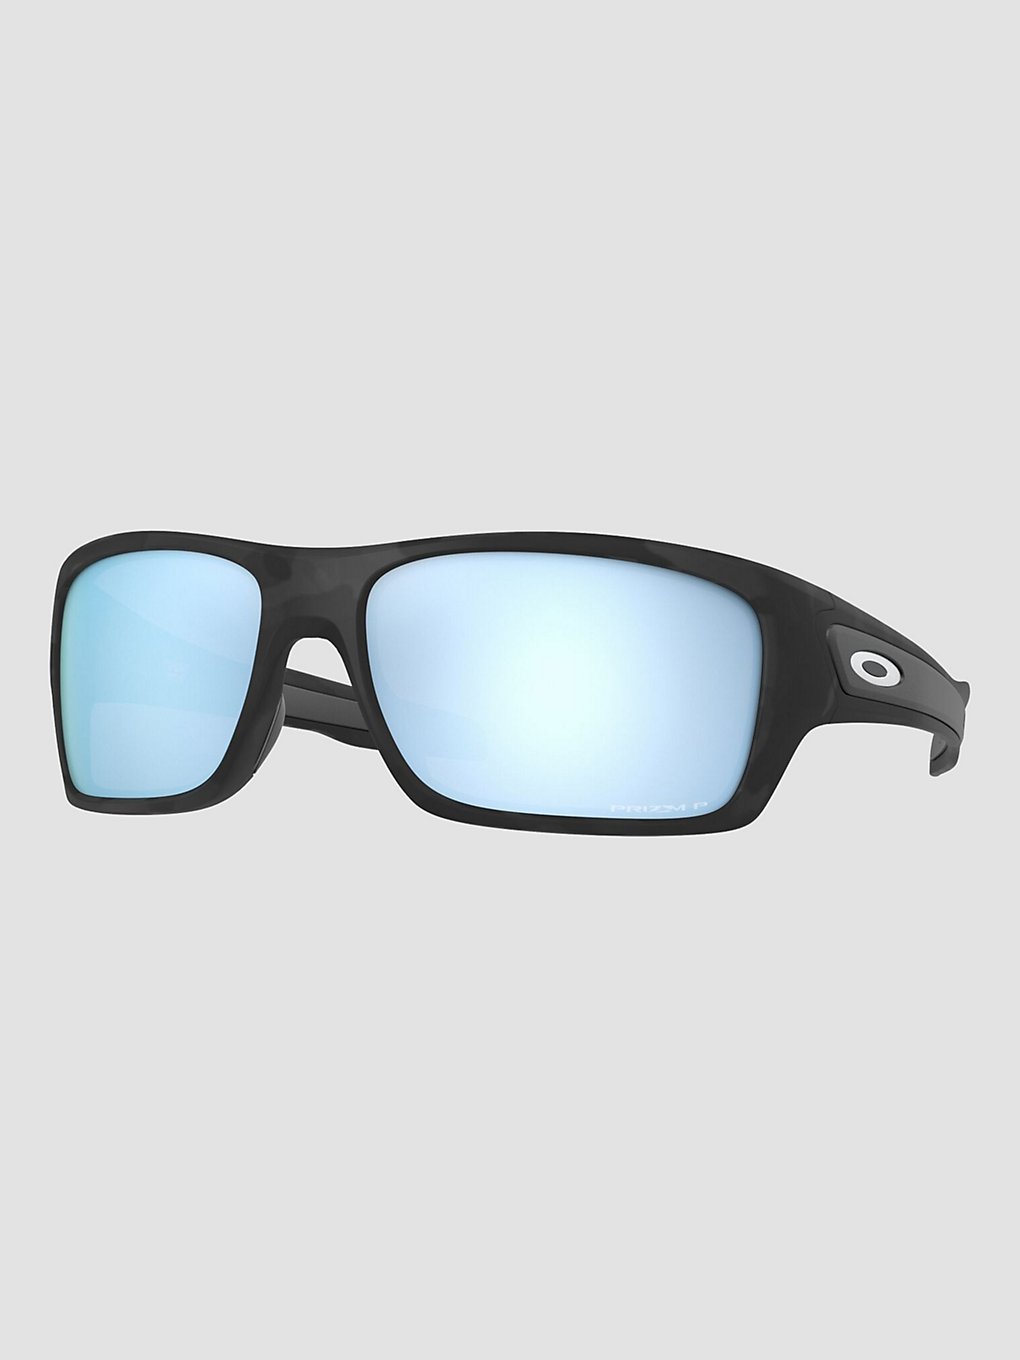 Oakley Turbine Matte Black Camo Sunglasses prizm deep water polarize